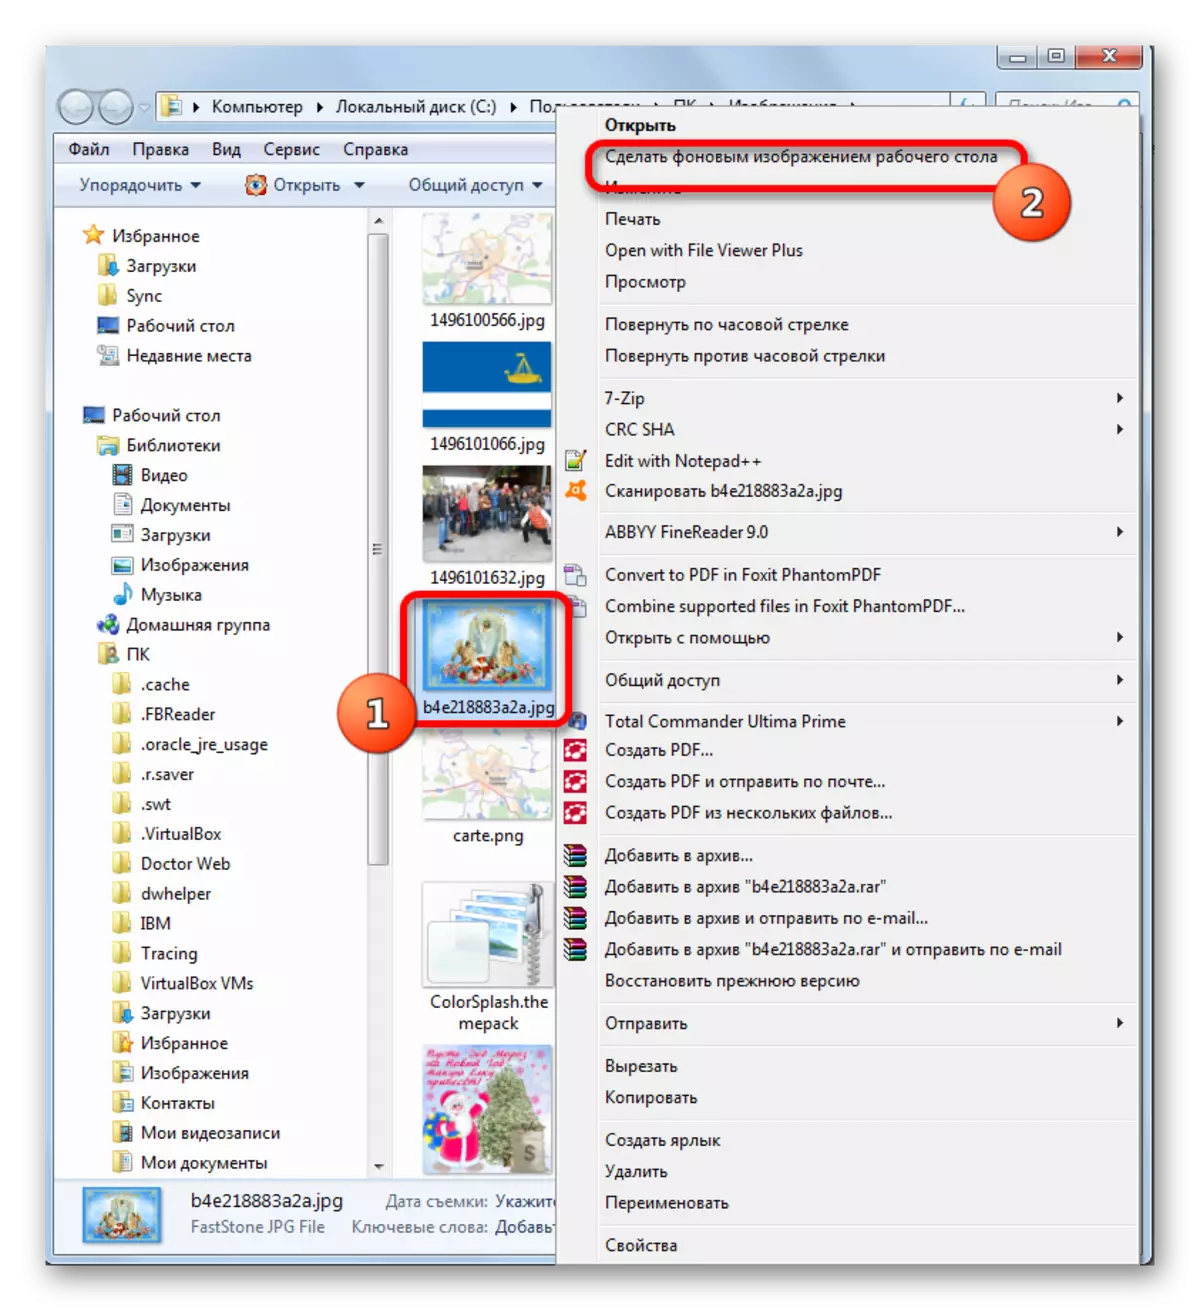 Windows 7деги Windows Explorer аркылуу иштактадагы фонду сүрөтүн өзгөртүү